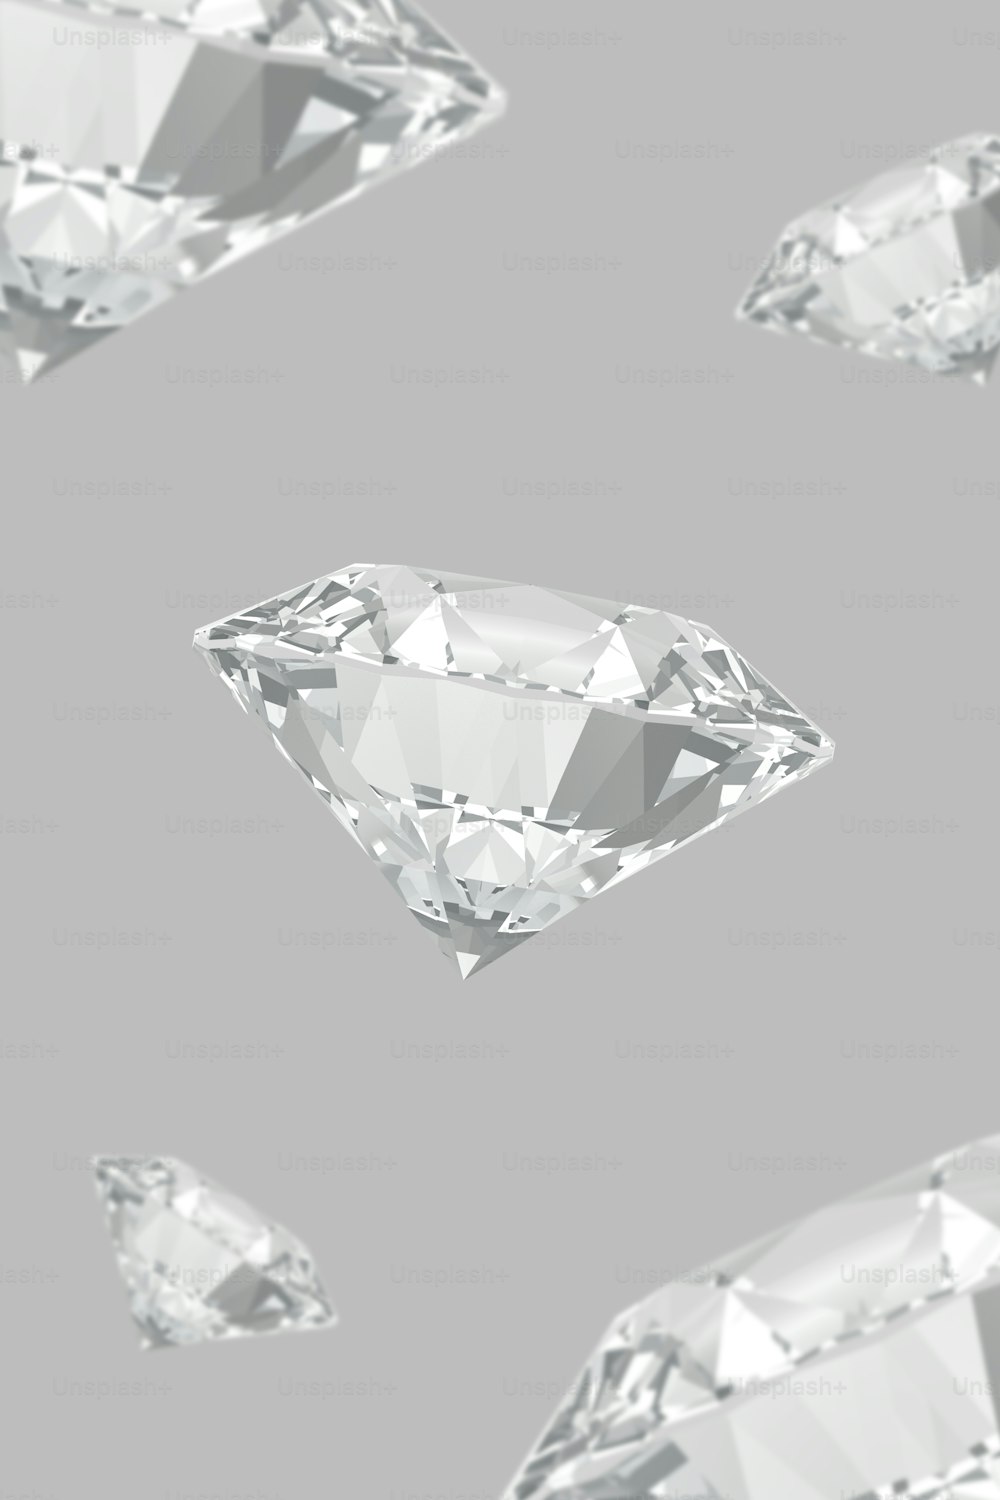 Un gruppo di diamanti che volano nell'aria